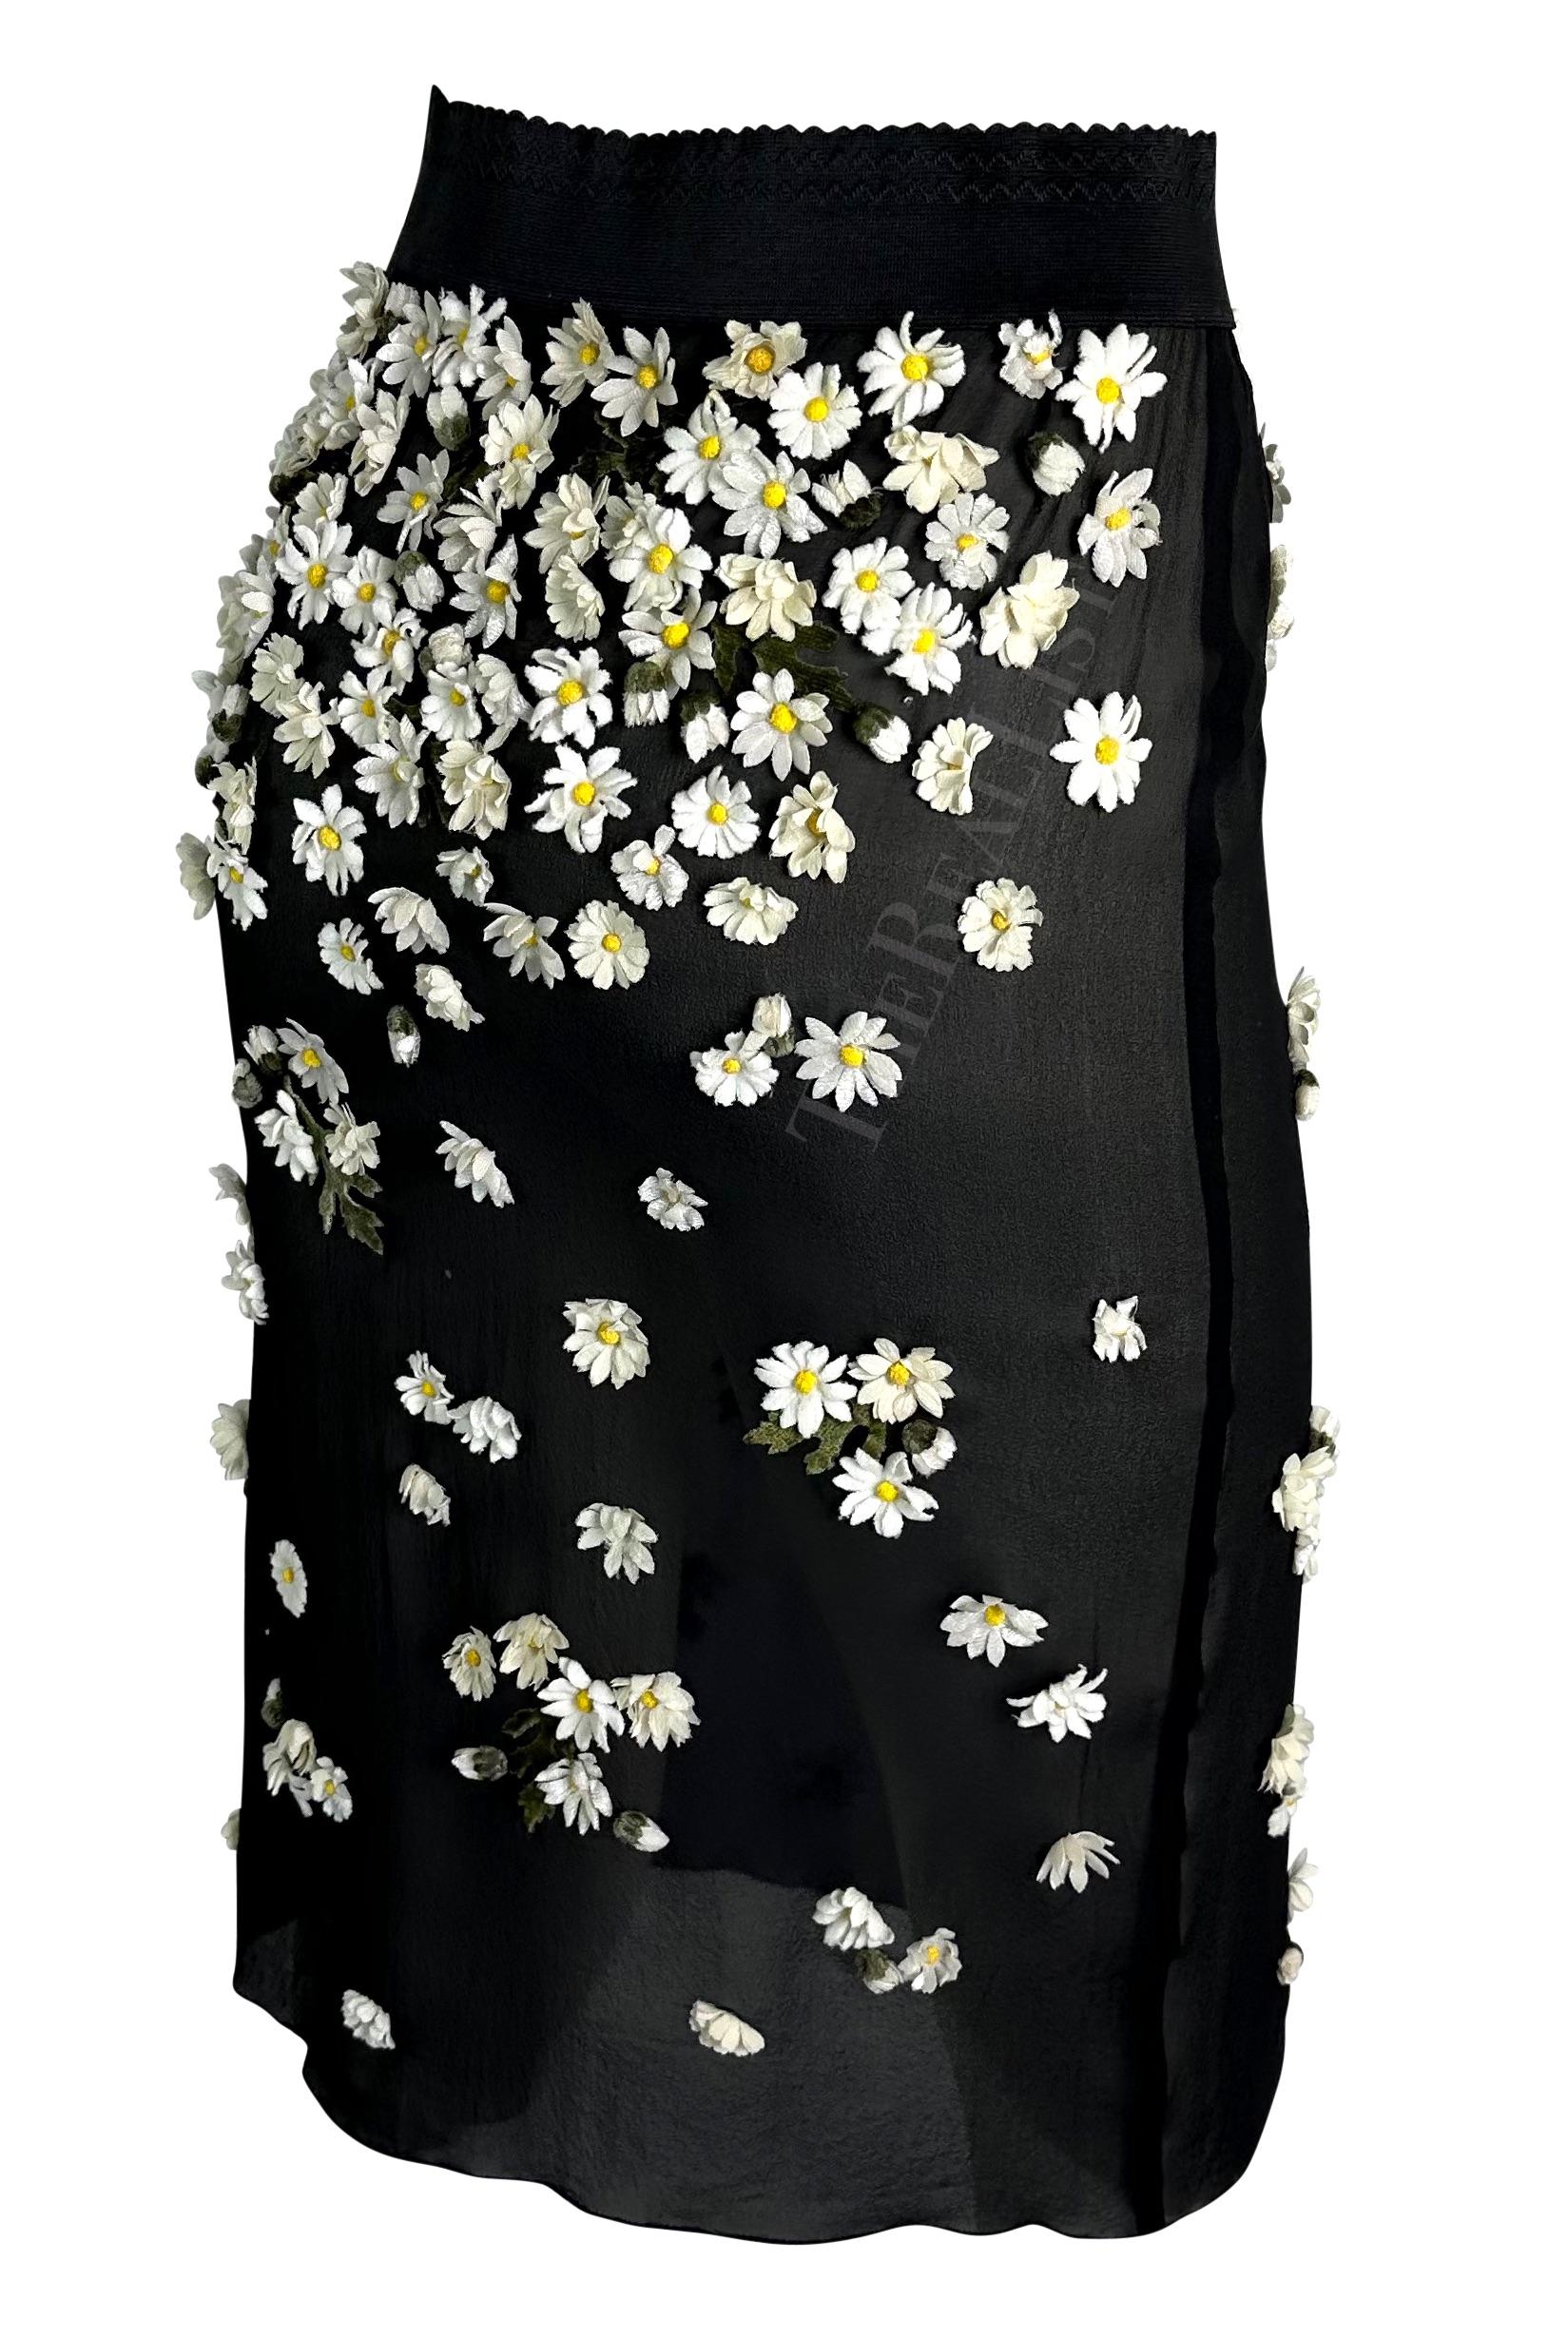 F/W 1999 Dolce & Gabbana Runway Daisy Flower Appliqué Sheer Black Slit Skirt  For Sale 4